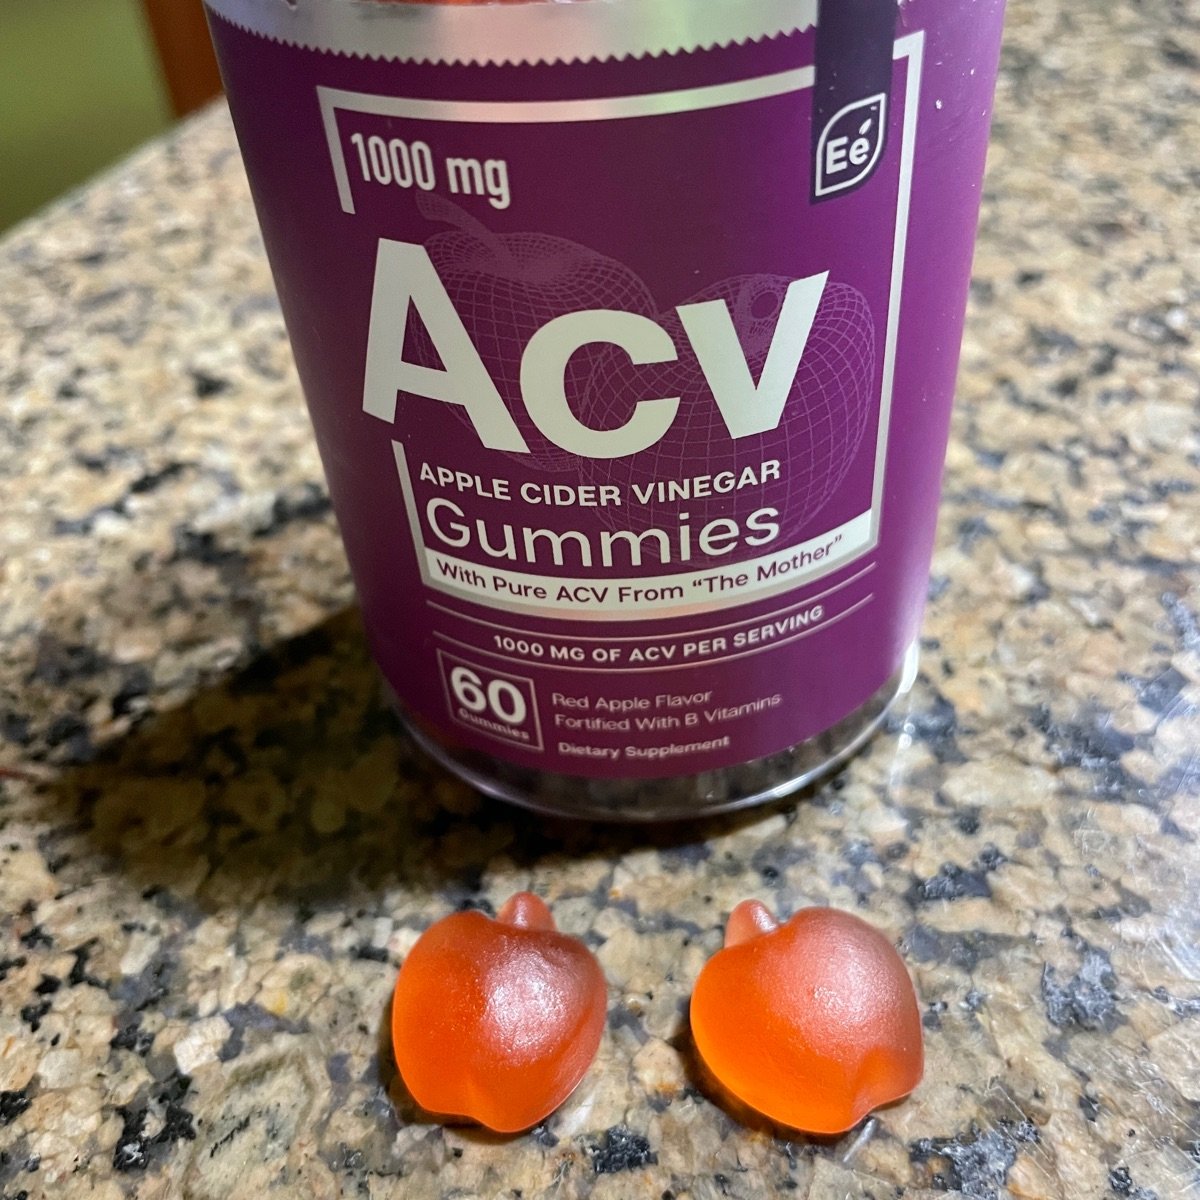 Essential elements Acv gummies Reviews | abillion